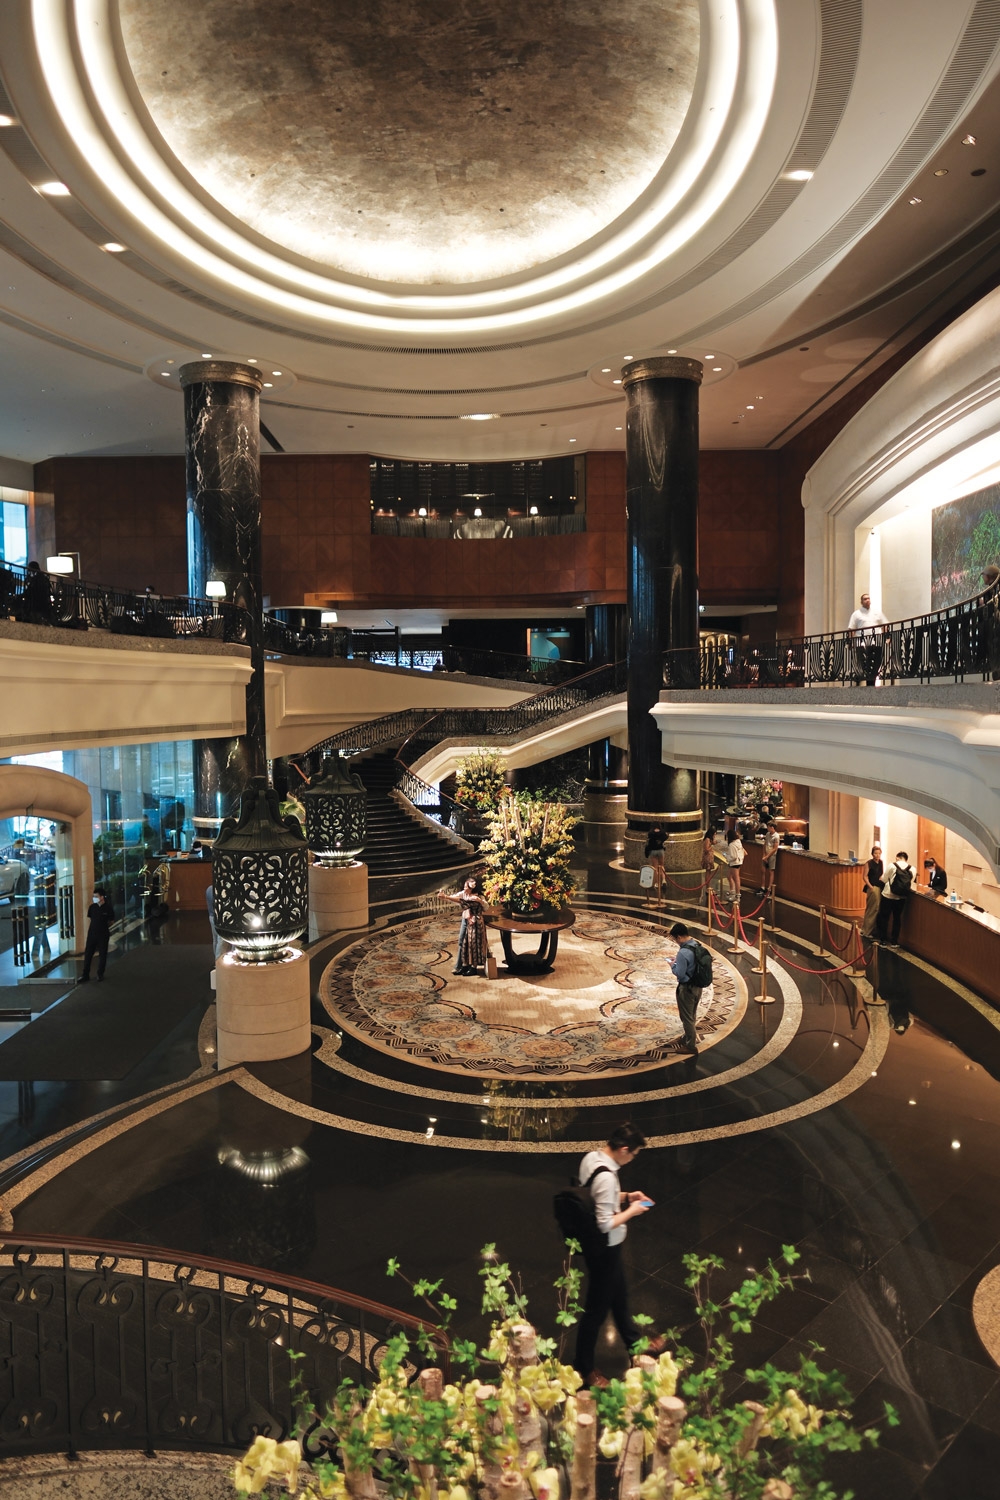 香江酒店中最大最有气派的大厅非Grand Hyatt莫属。